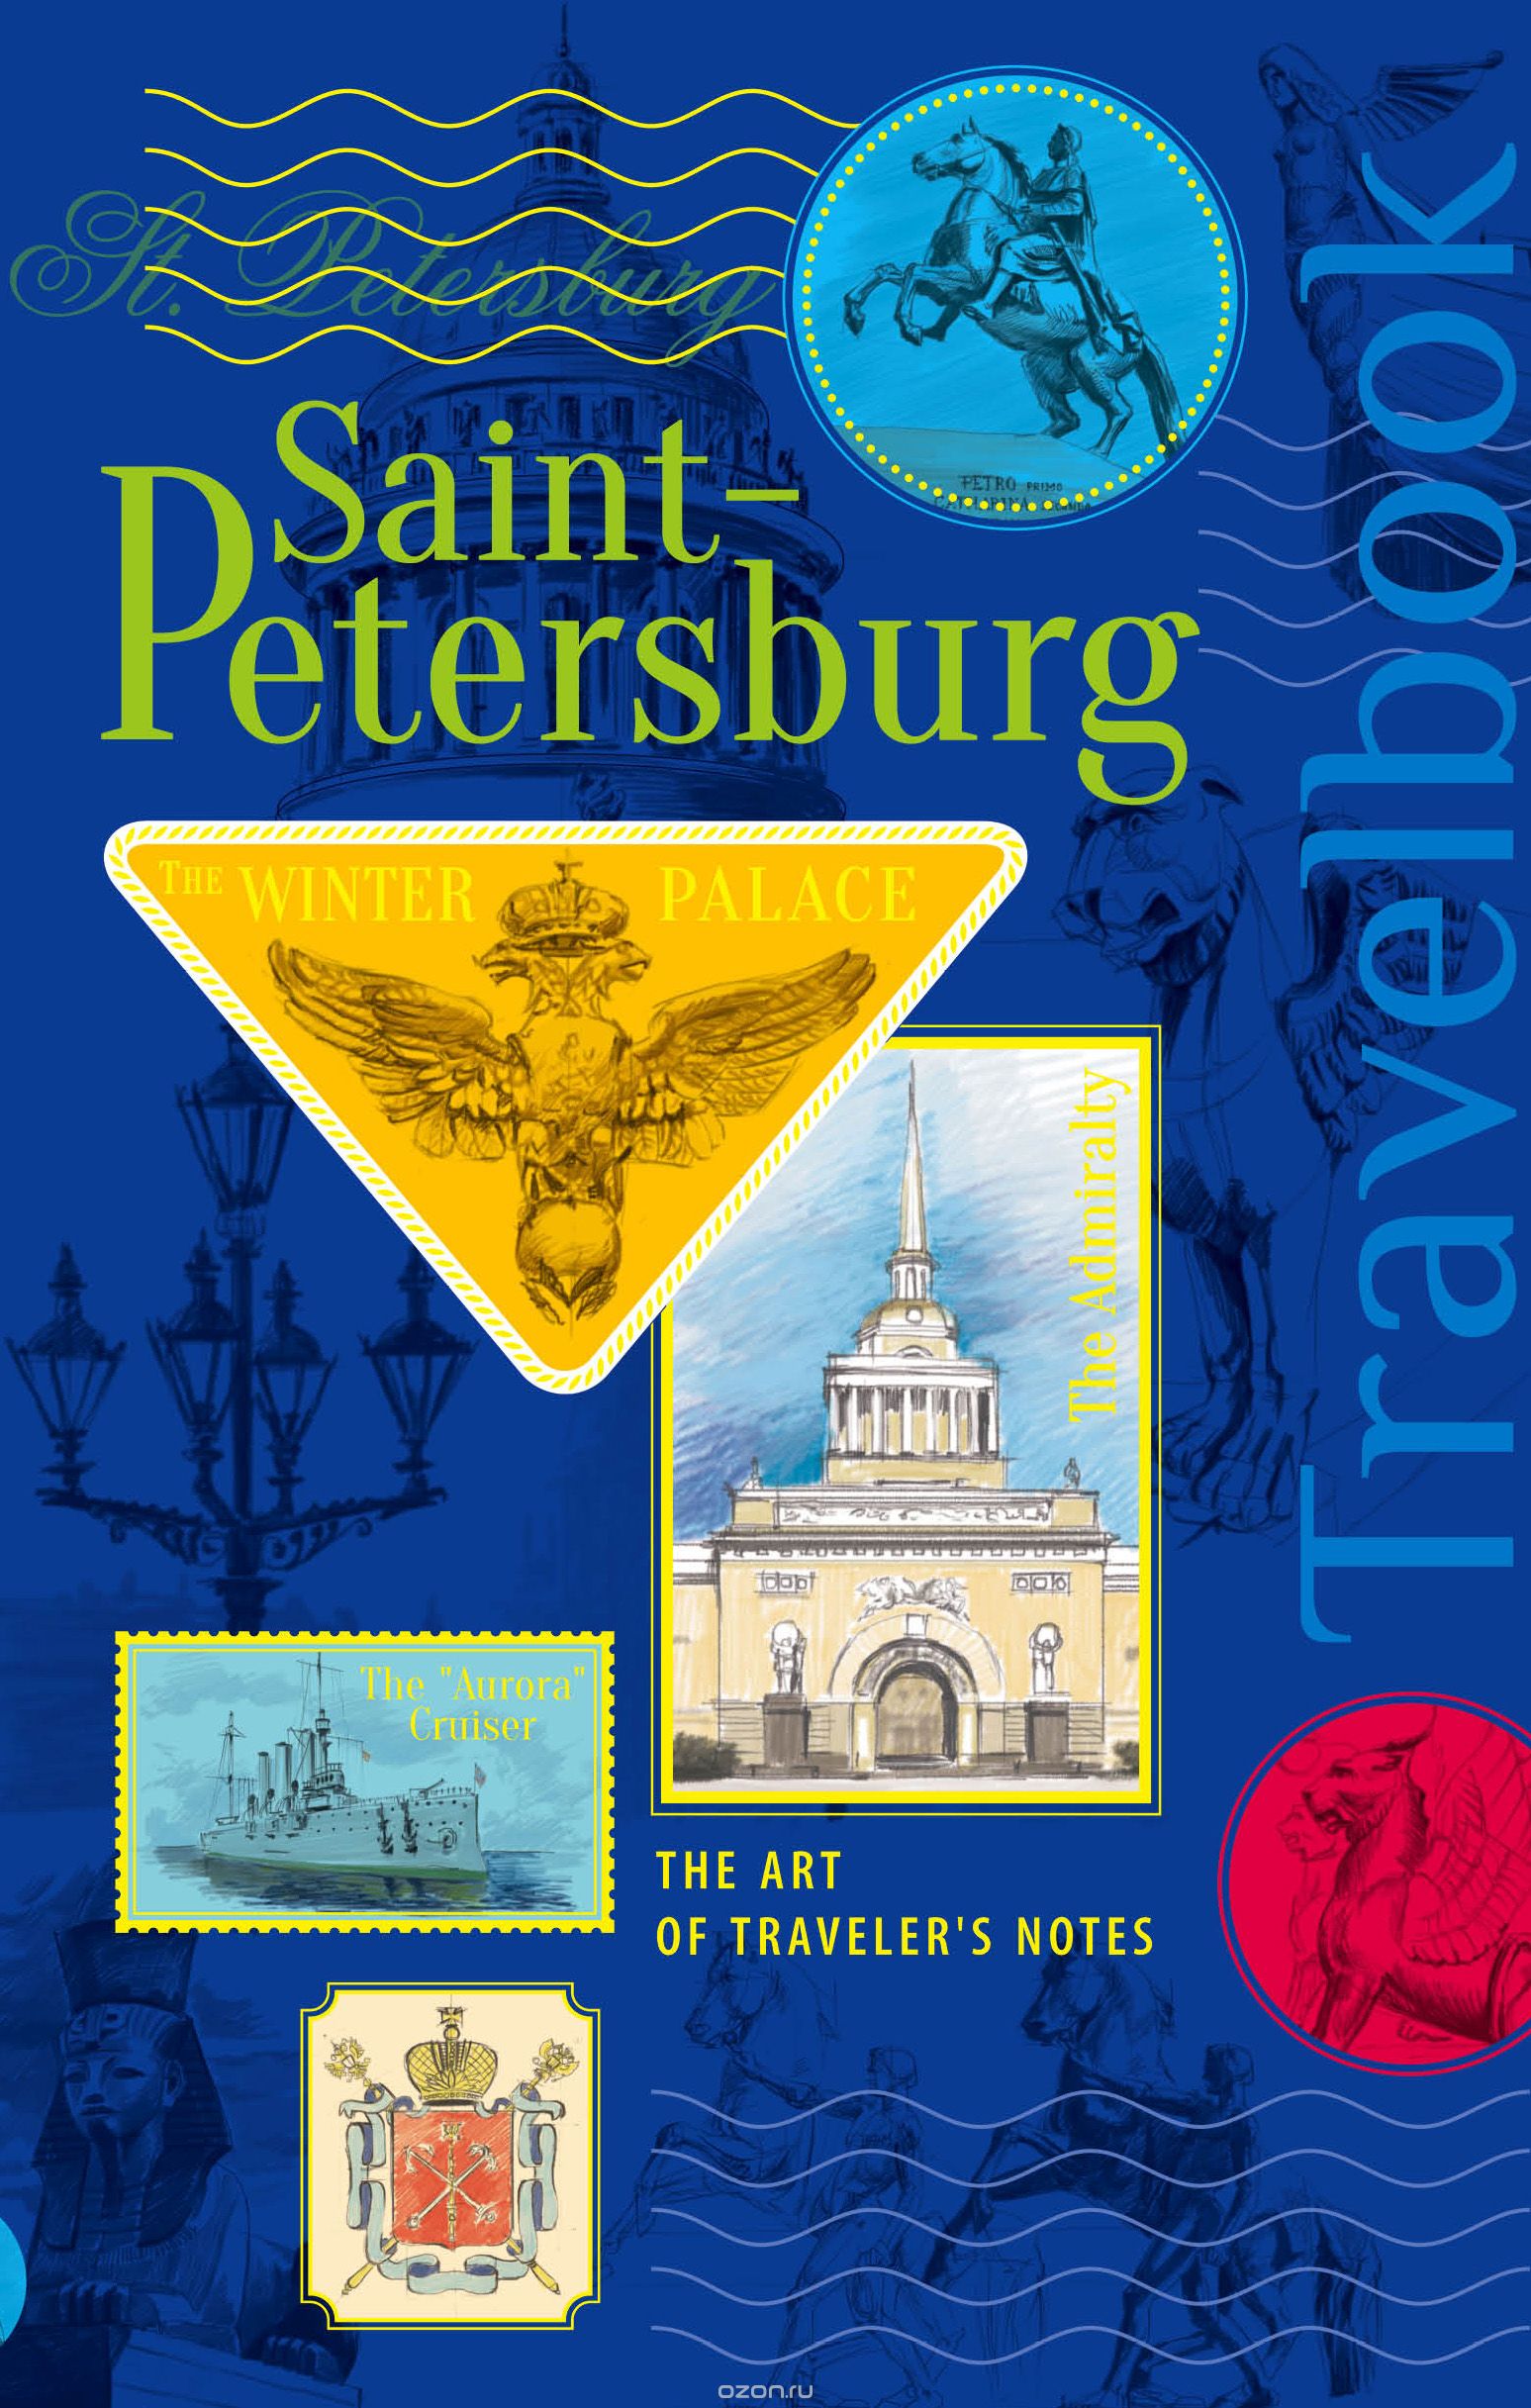 St. Petersburg. The Art of traveler's Notes / Санкт-Петербург. Книга эскизов. Искусство визуальных заметок